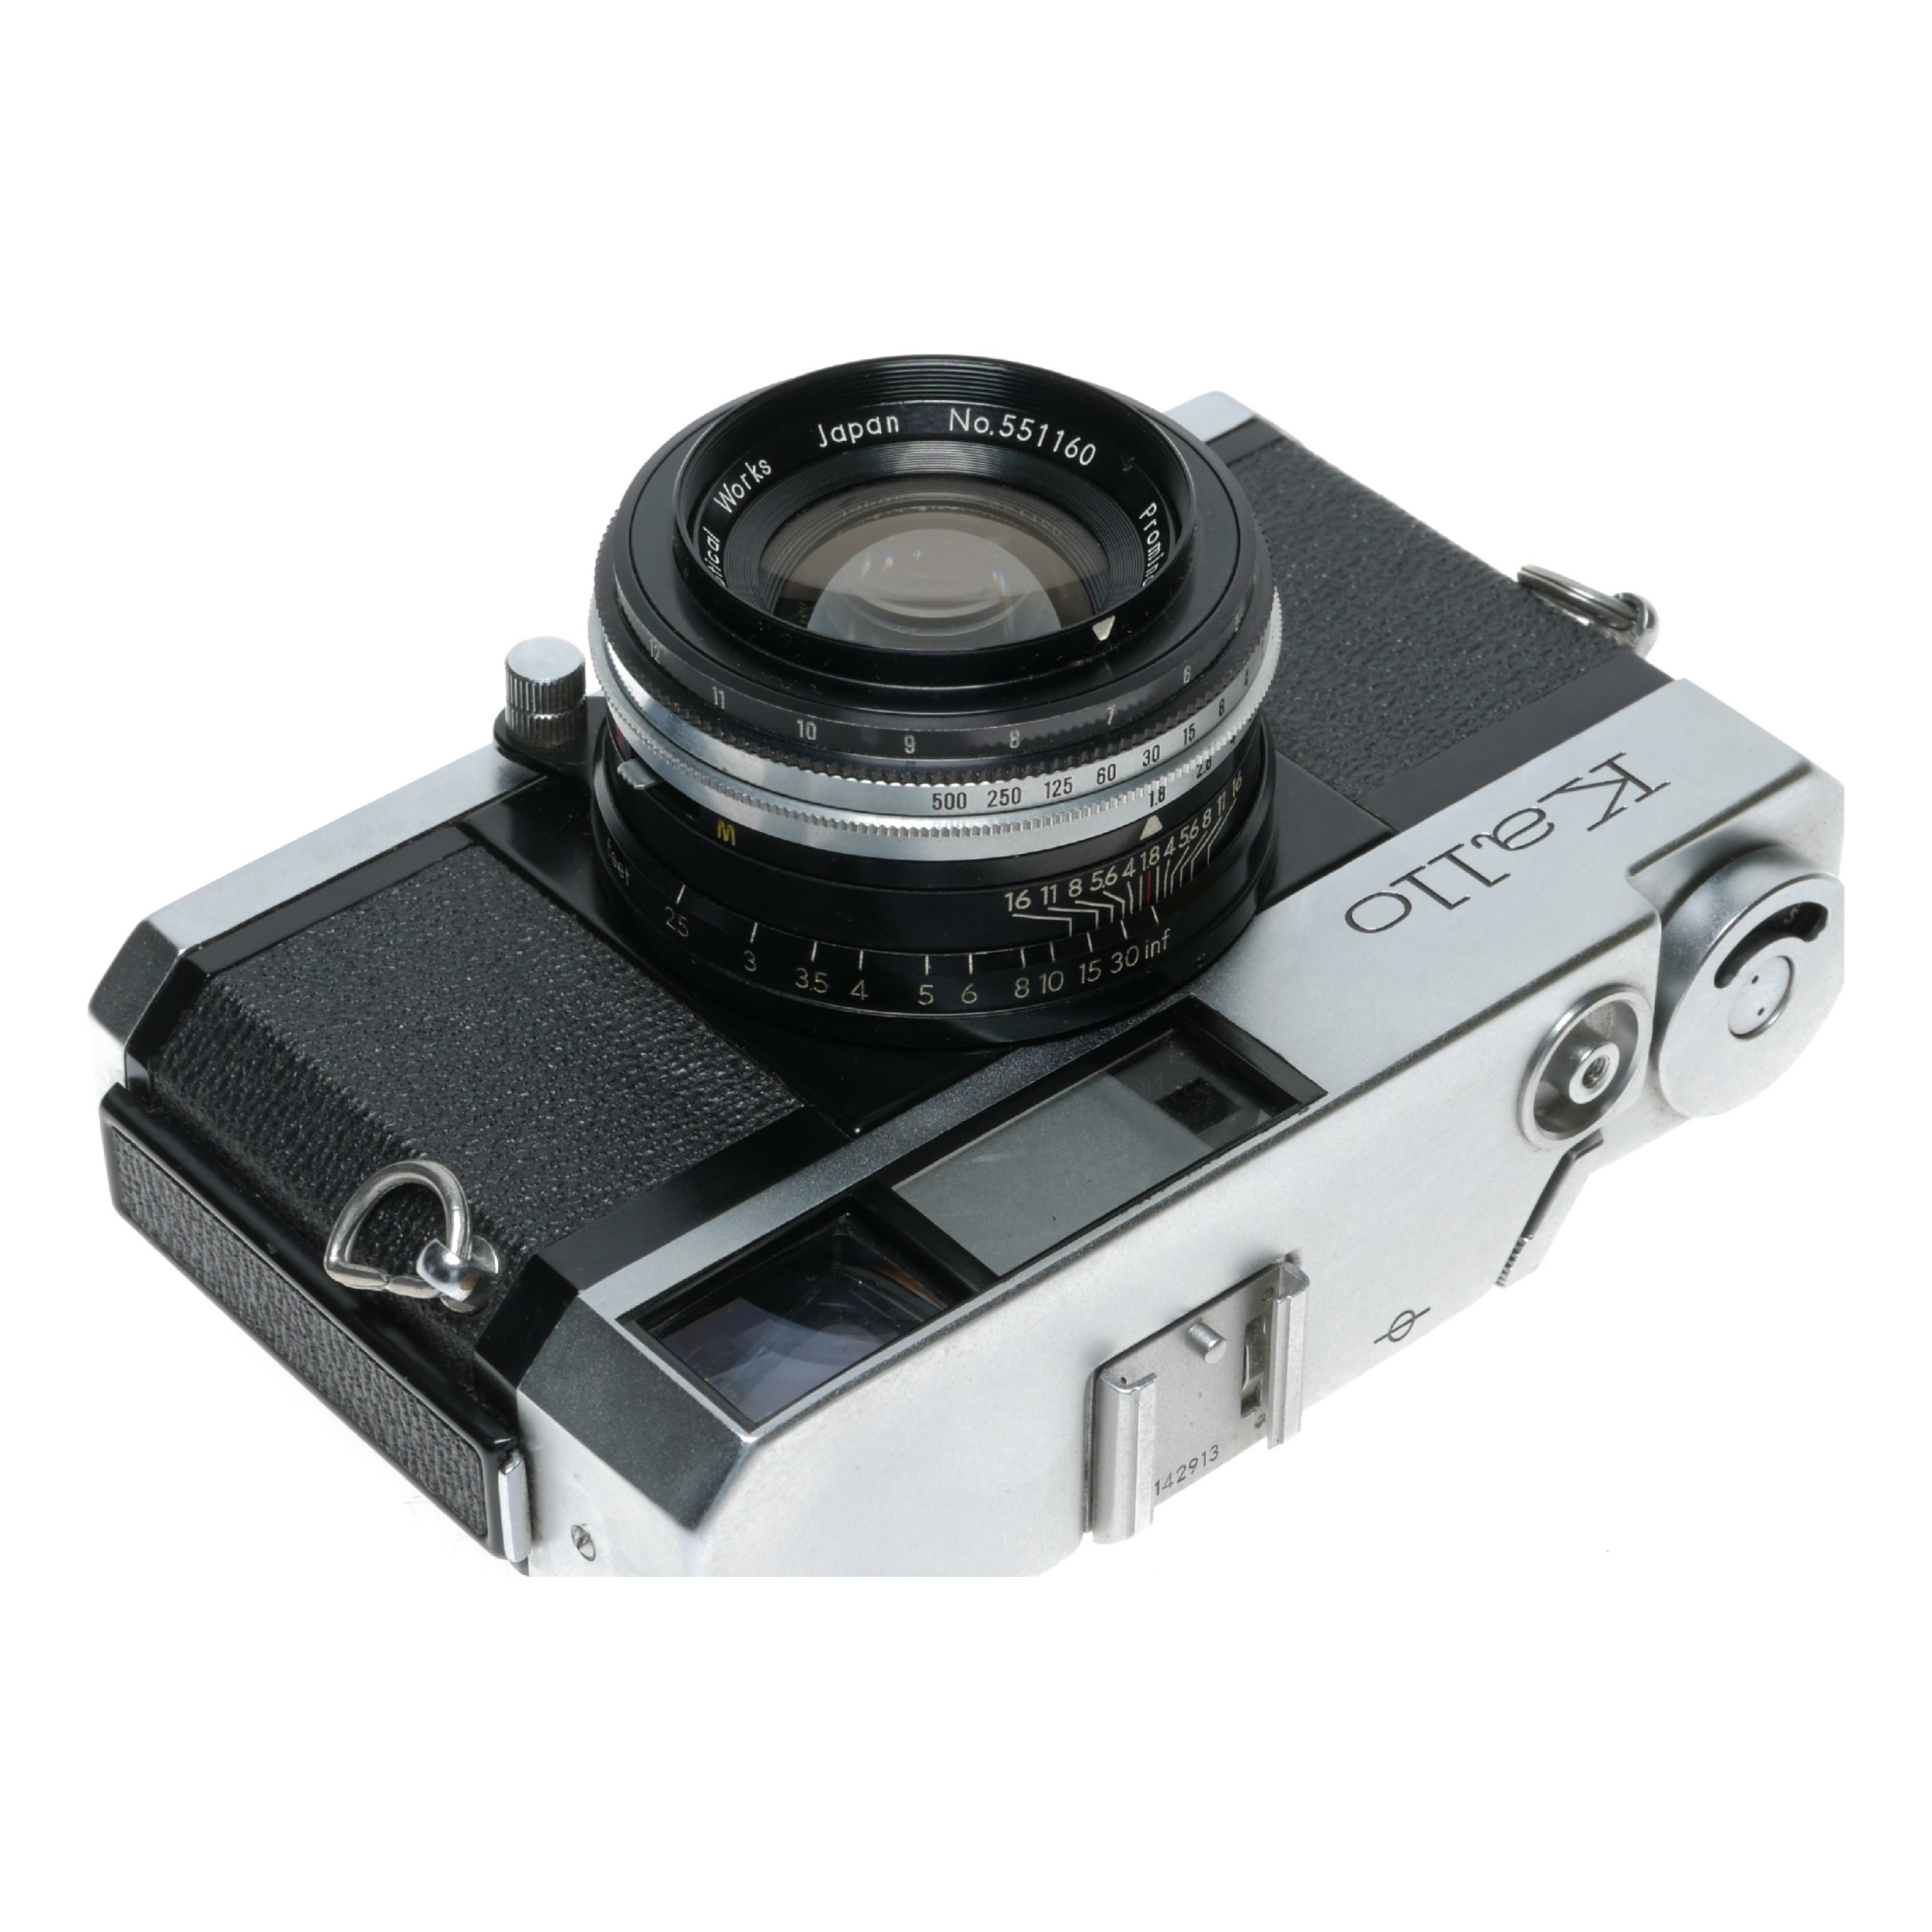 Kallo 180 35mm Film SLR Camera Kowa Prominar 1:1.8 f=45mm